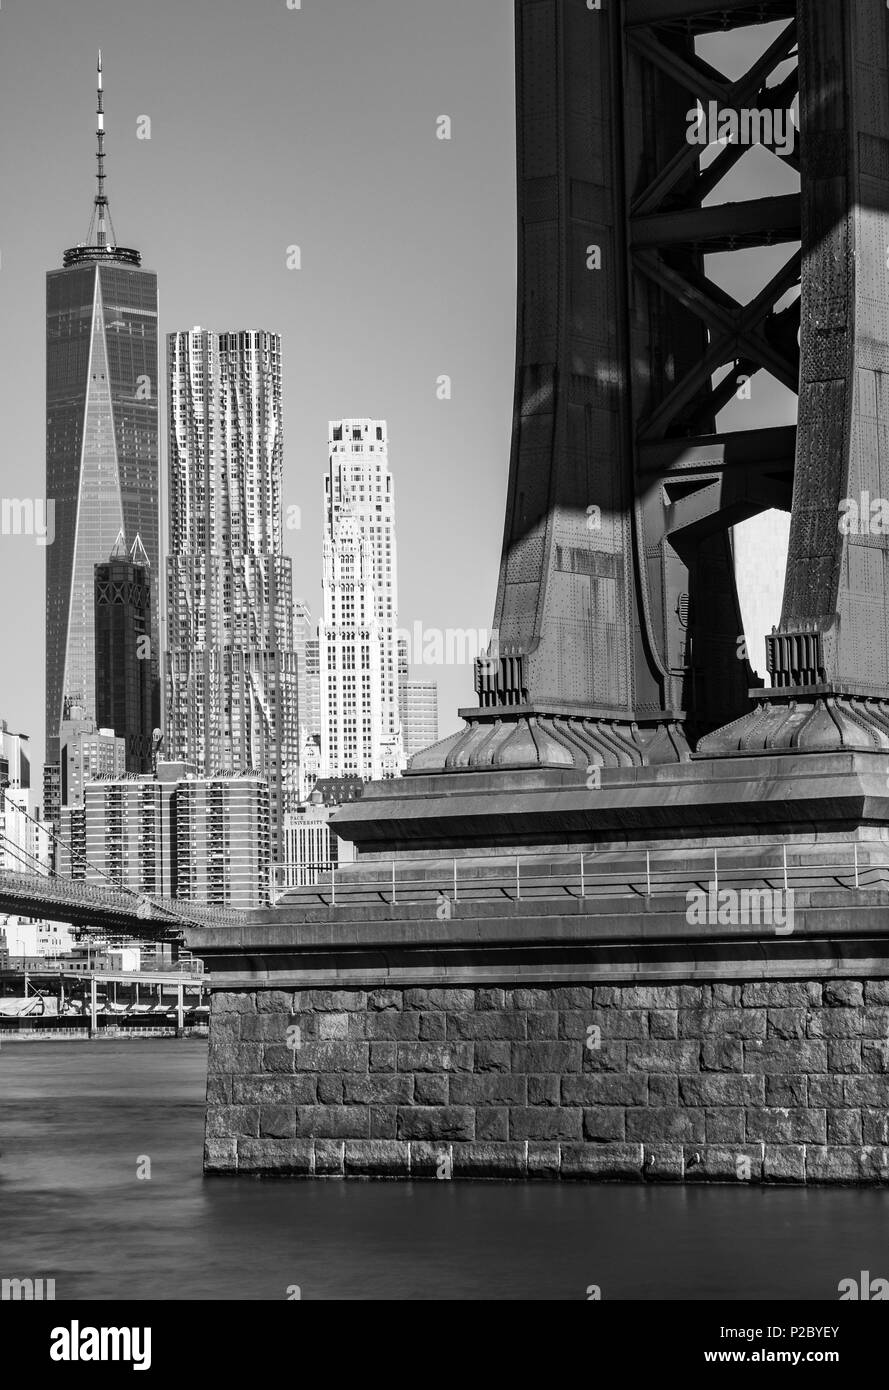 Immagine in bianco e nero di un metallo e mattone Manhattan Bridge pier con lo skyline di Manhattan e il World Trade Center presi da Brooklyn, New York, Stati Uniti d'America Foto Stock